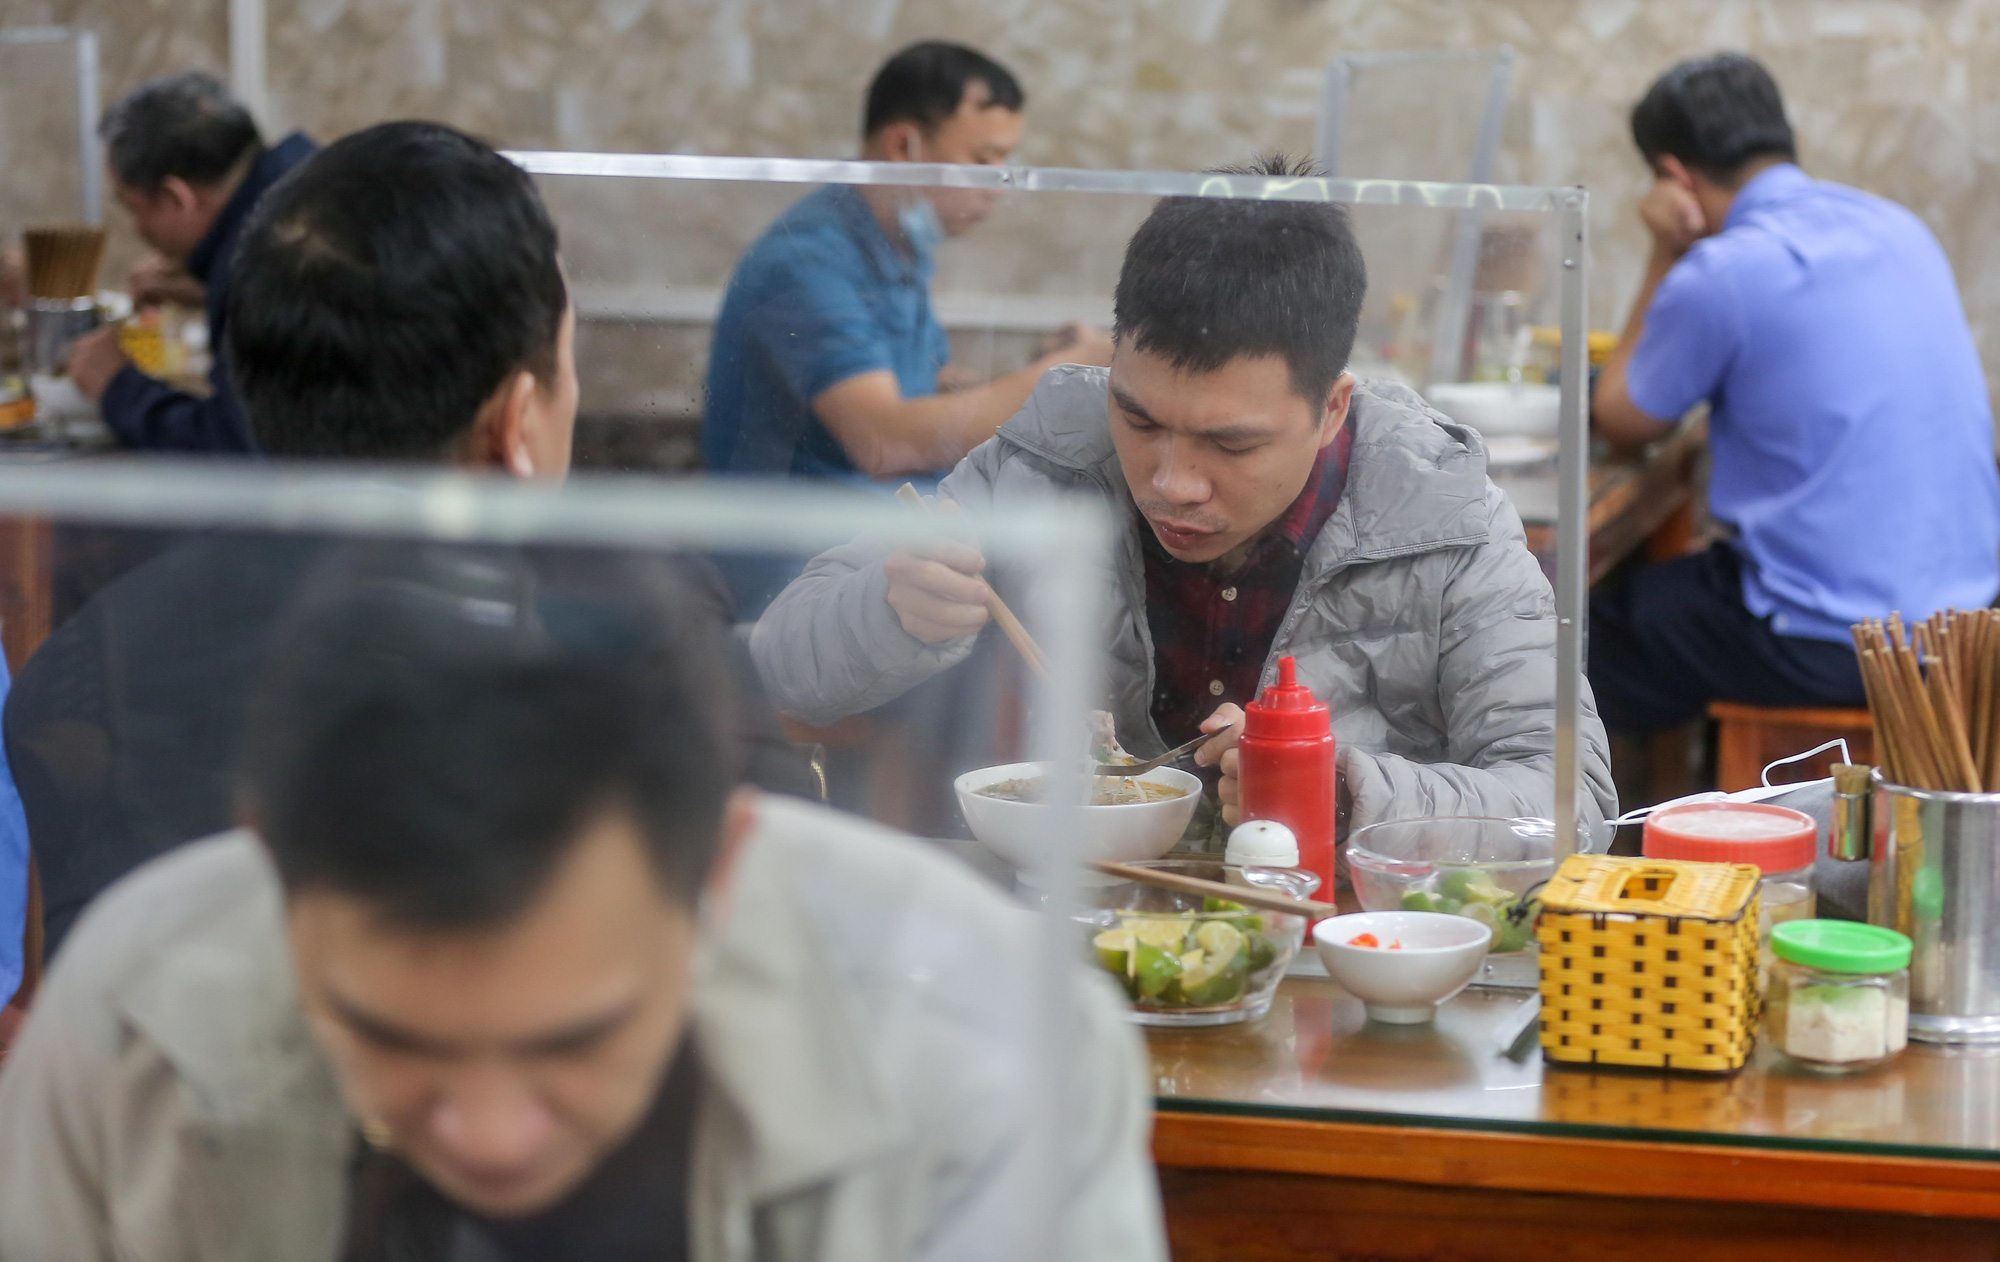 CLIP: Nườm nượp người dân đến ăn sáng tại quán ở Hà Nội - Ảnh 11.